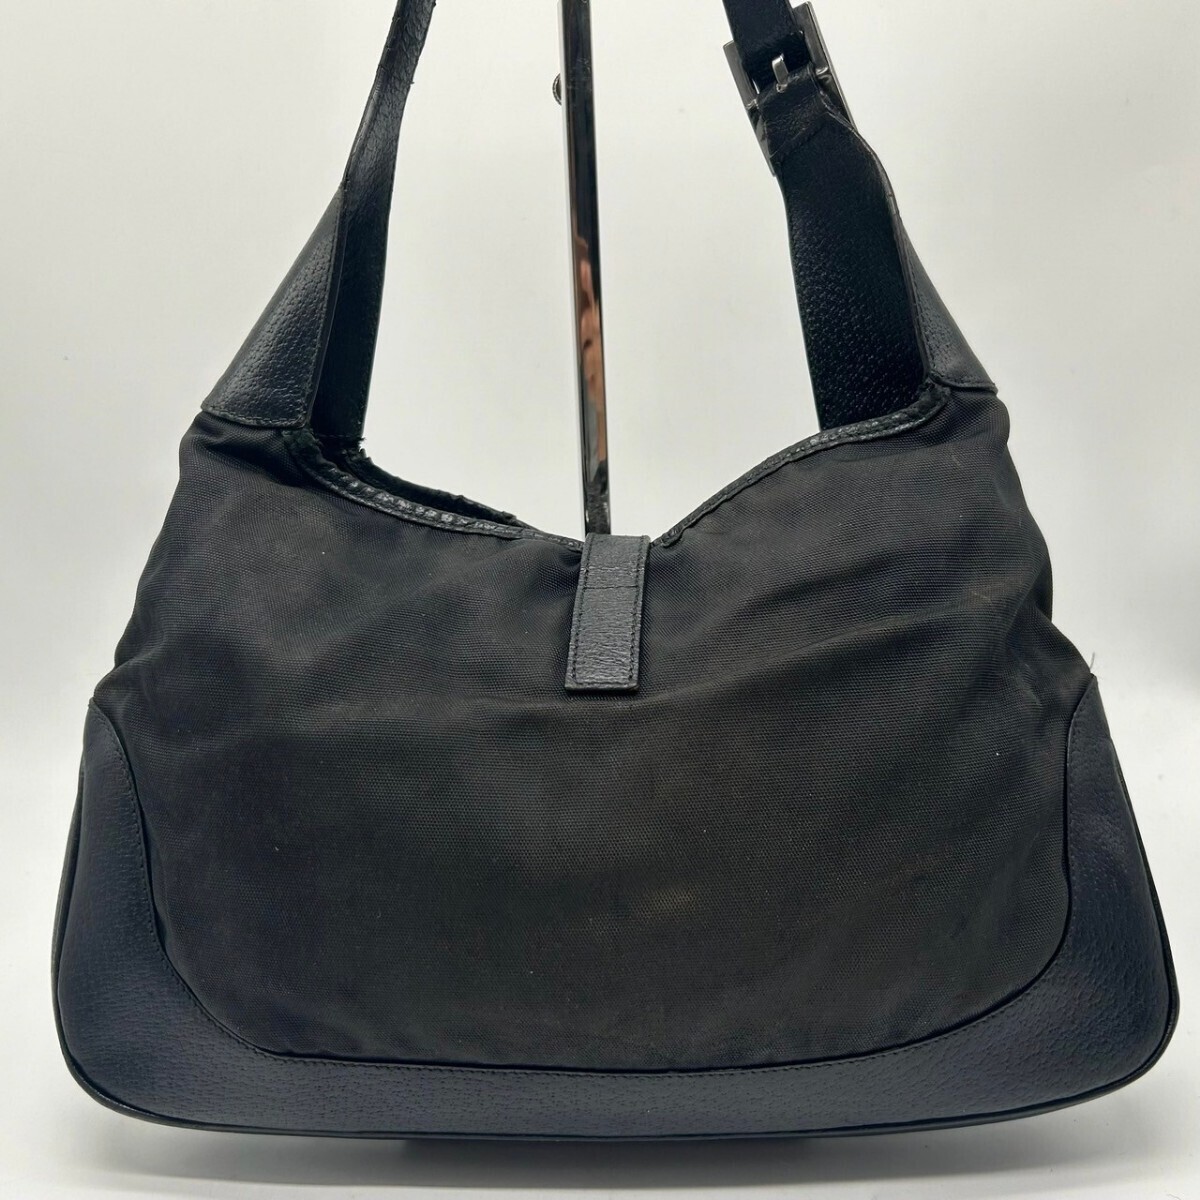 [ прекрасный товар ] Gucci GUCCI ручная сумочка сумка на плечо one плечо домкрат - плечо .. чёрный чёрная кожа натуральная кожа парусина сумка 